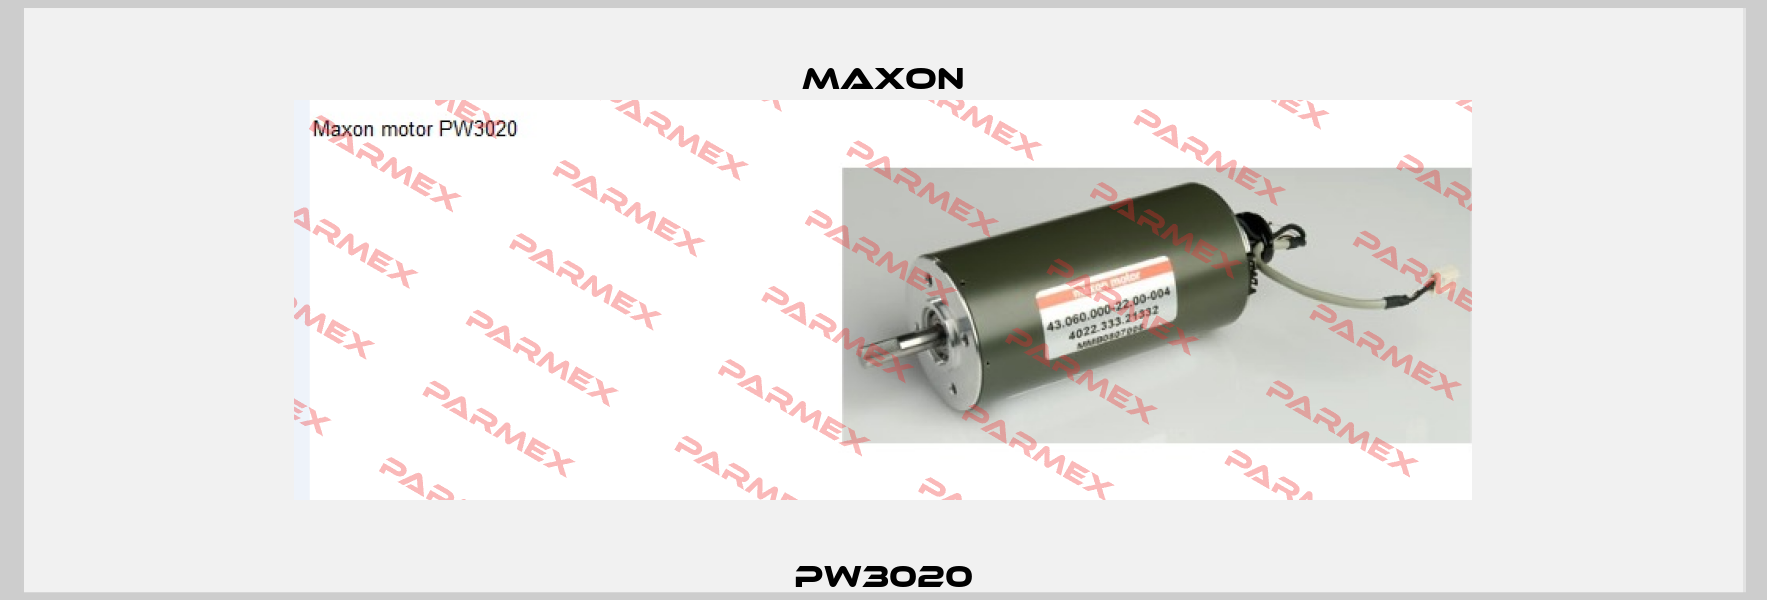 PW3020 Maxon